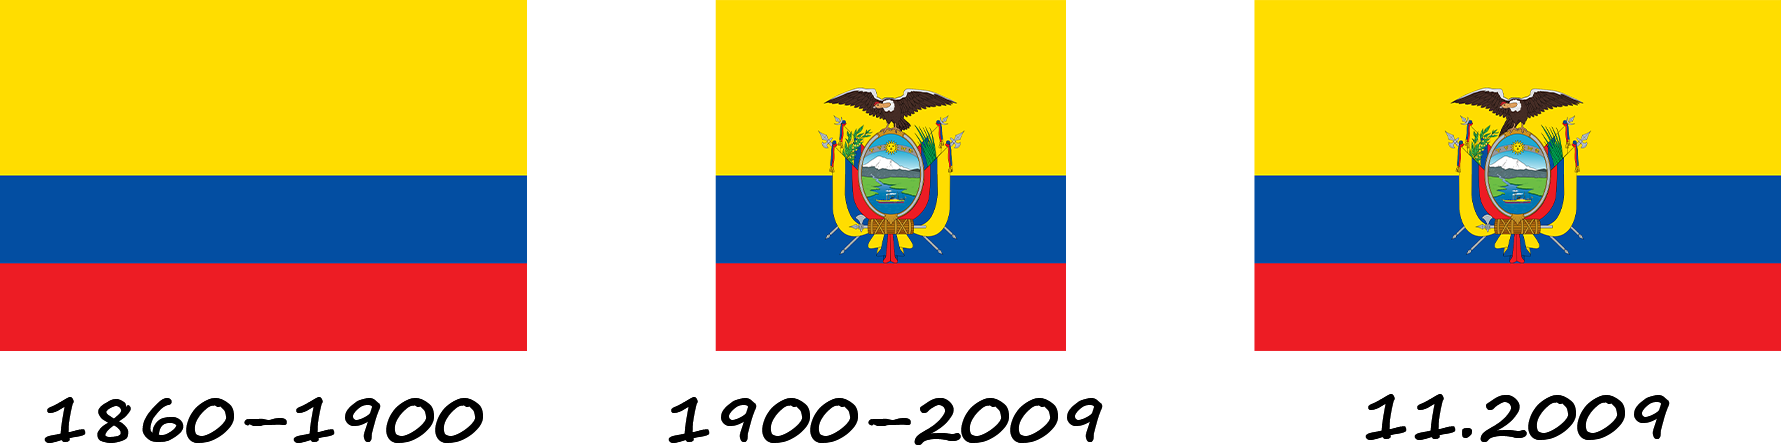 History of the flag of Ecuador